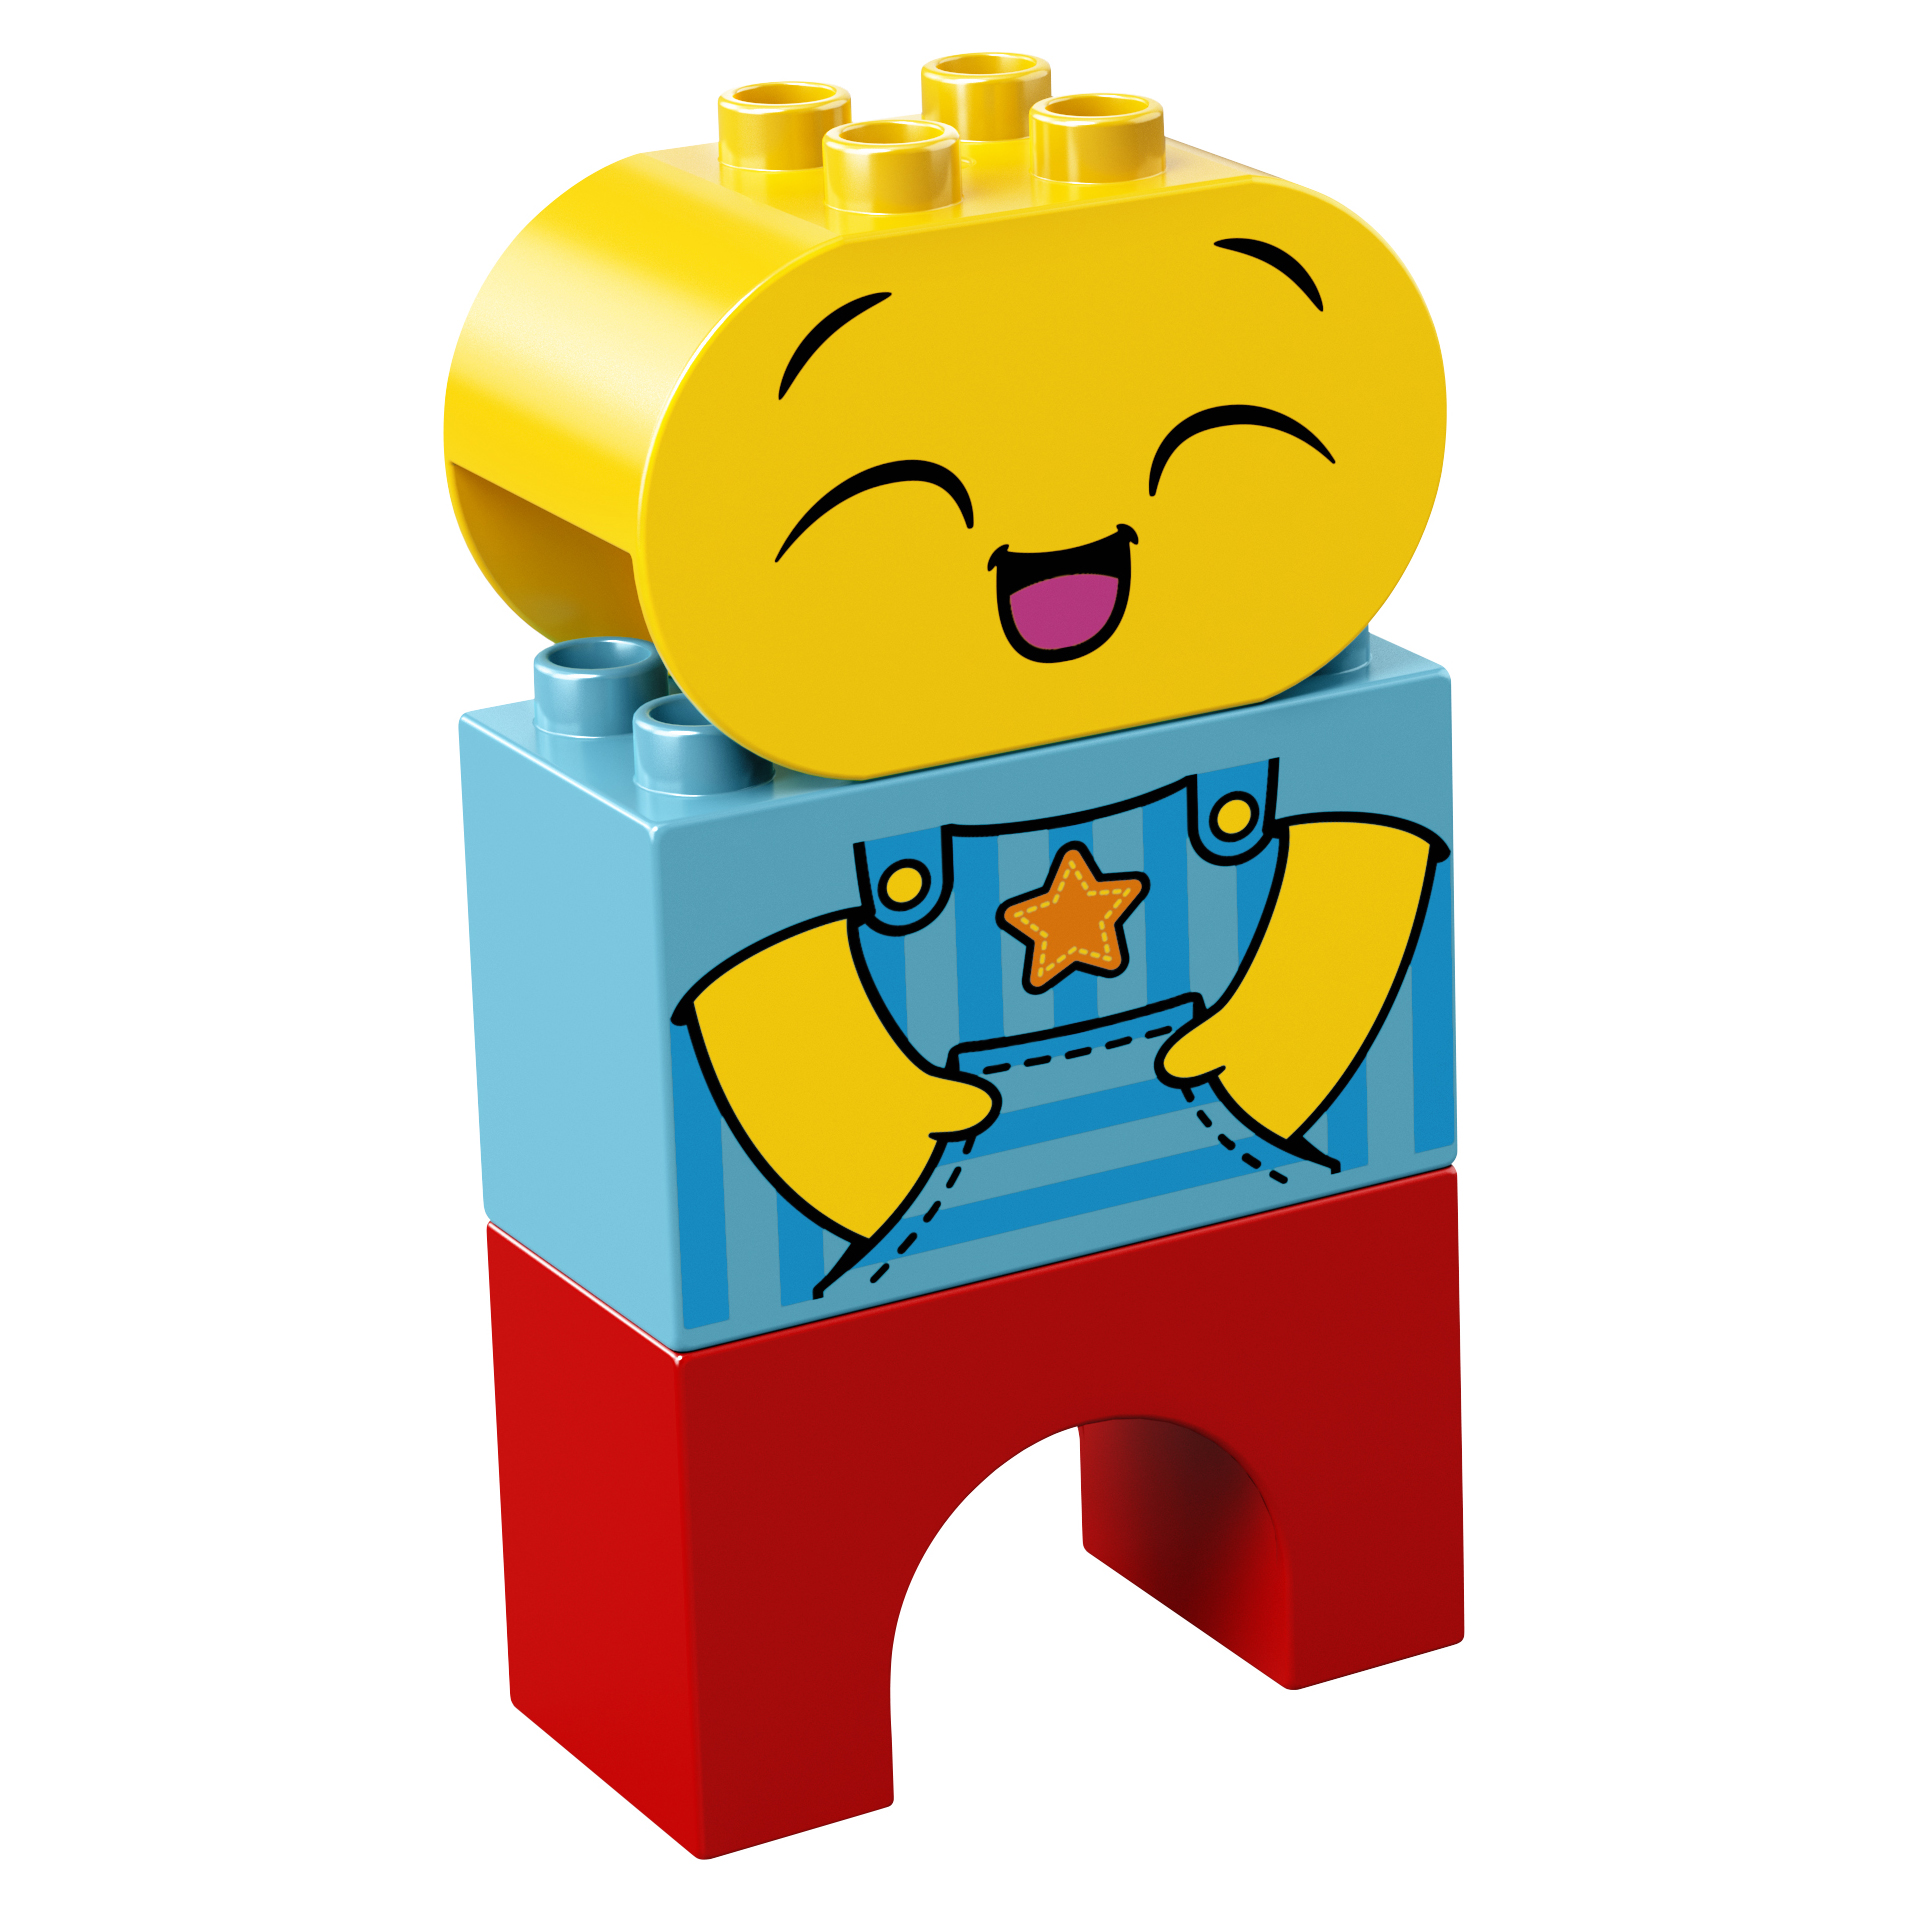 Варианты лего дупло: DUPLO® | Серии | LEGO.com RU